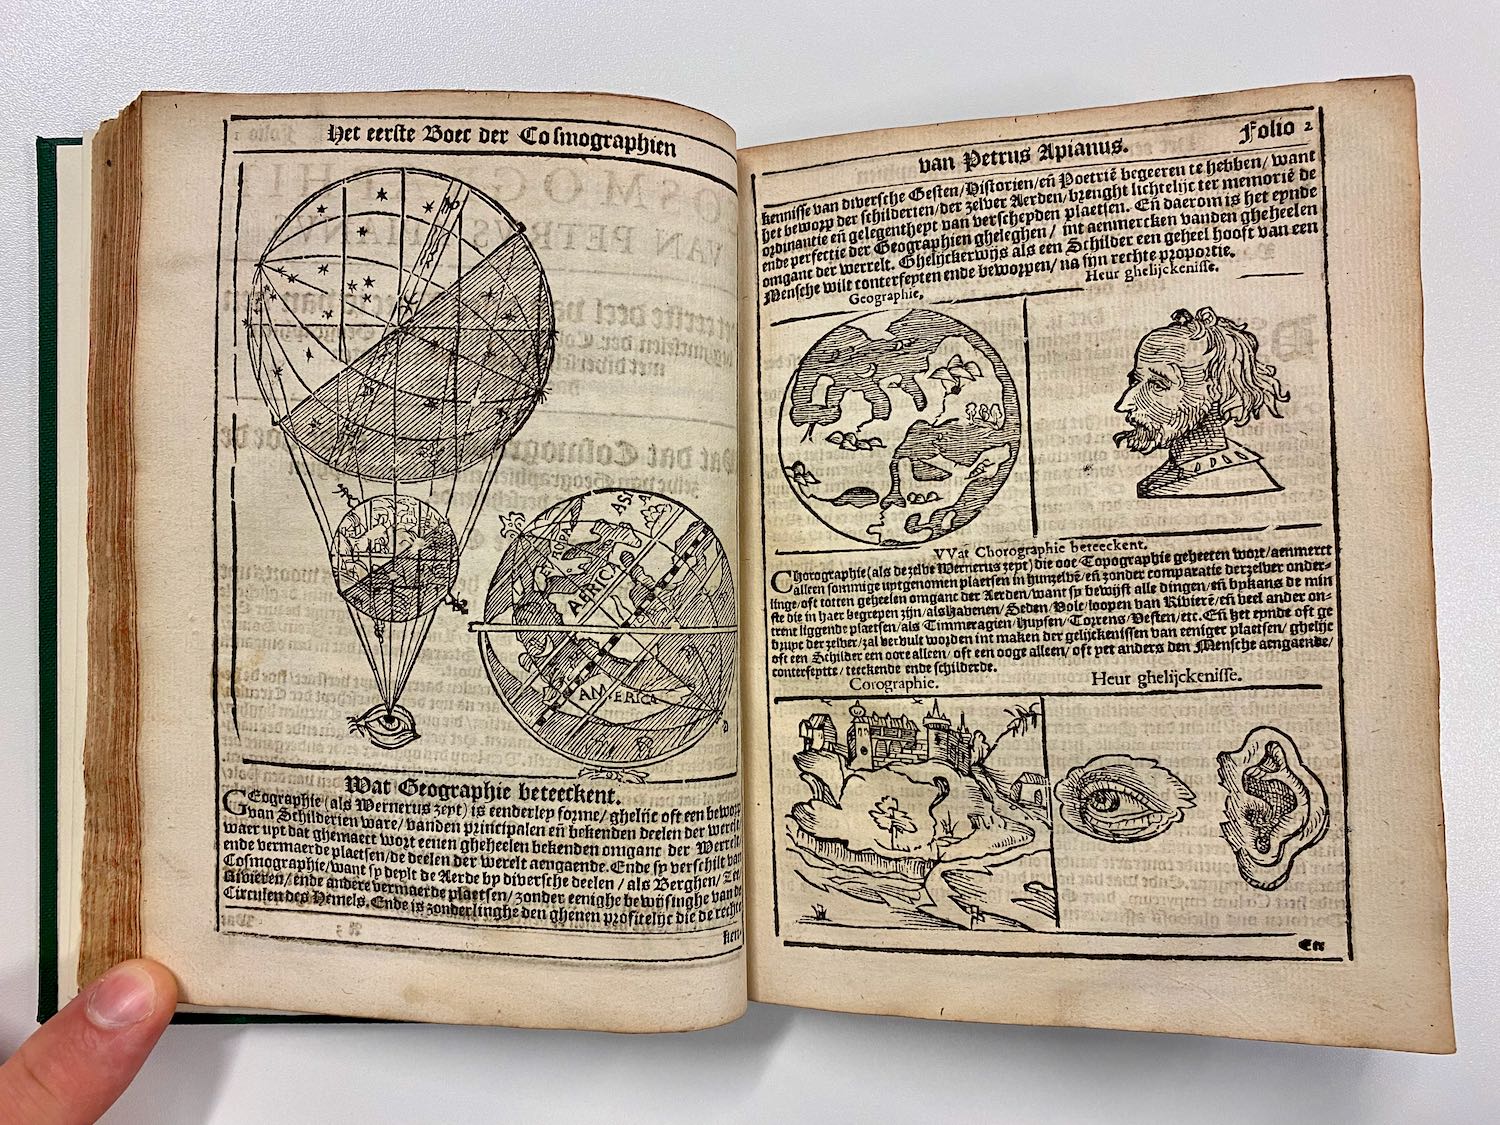 Je bekijkt nu NL-versie van Cosmographica van Apianus – 1598 INGEZIEN